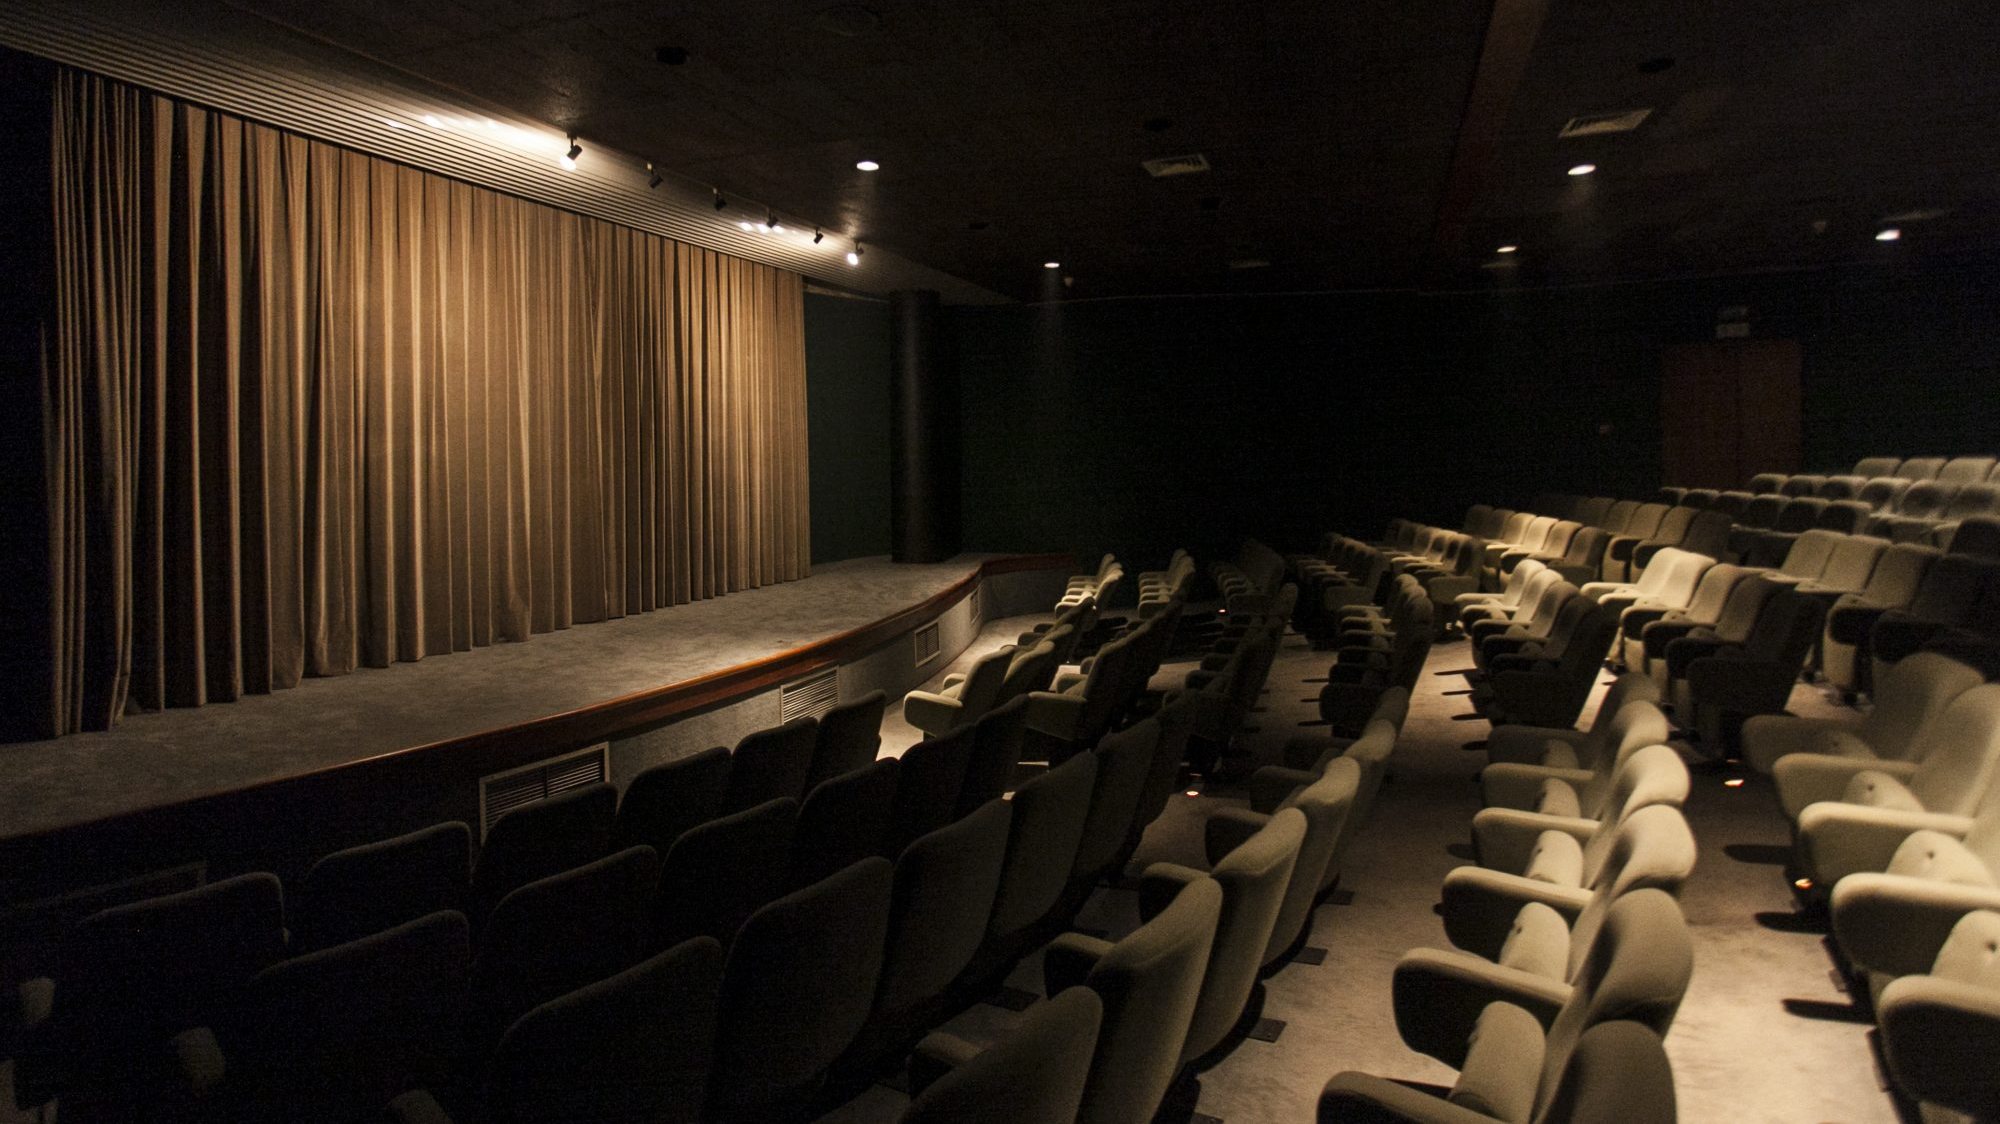 O Cinema Trindade, no Porto, será um dos palcos da iniciativa que levará ao público a obra completa da realizadora Regina Pessoa